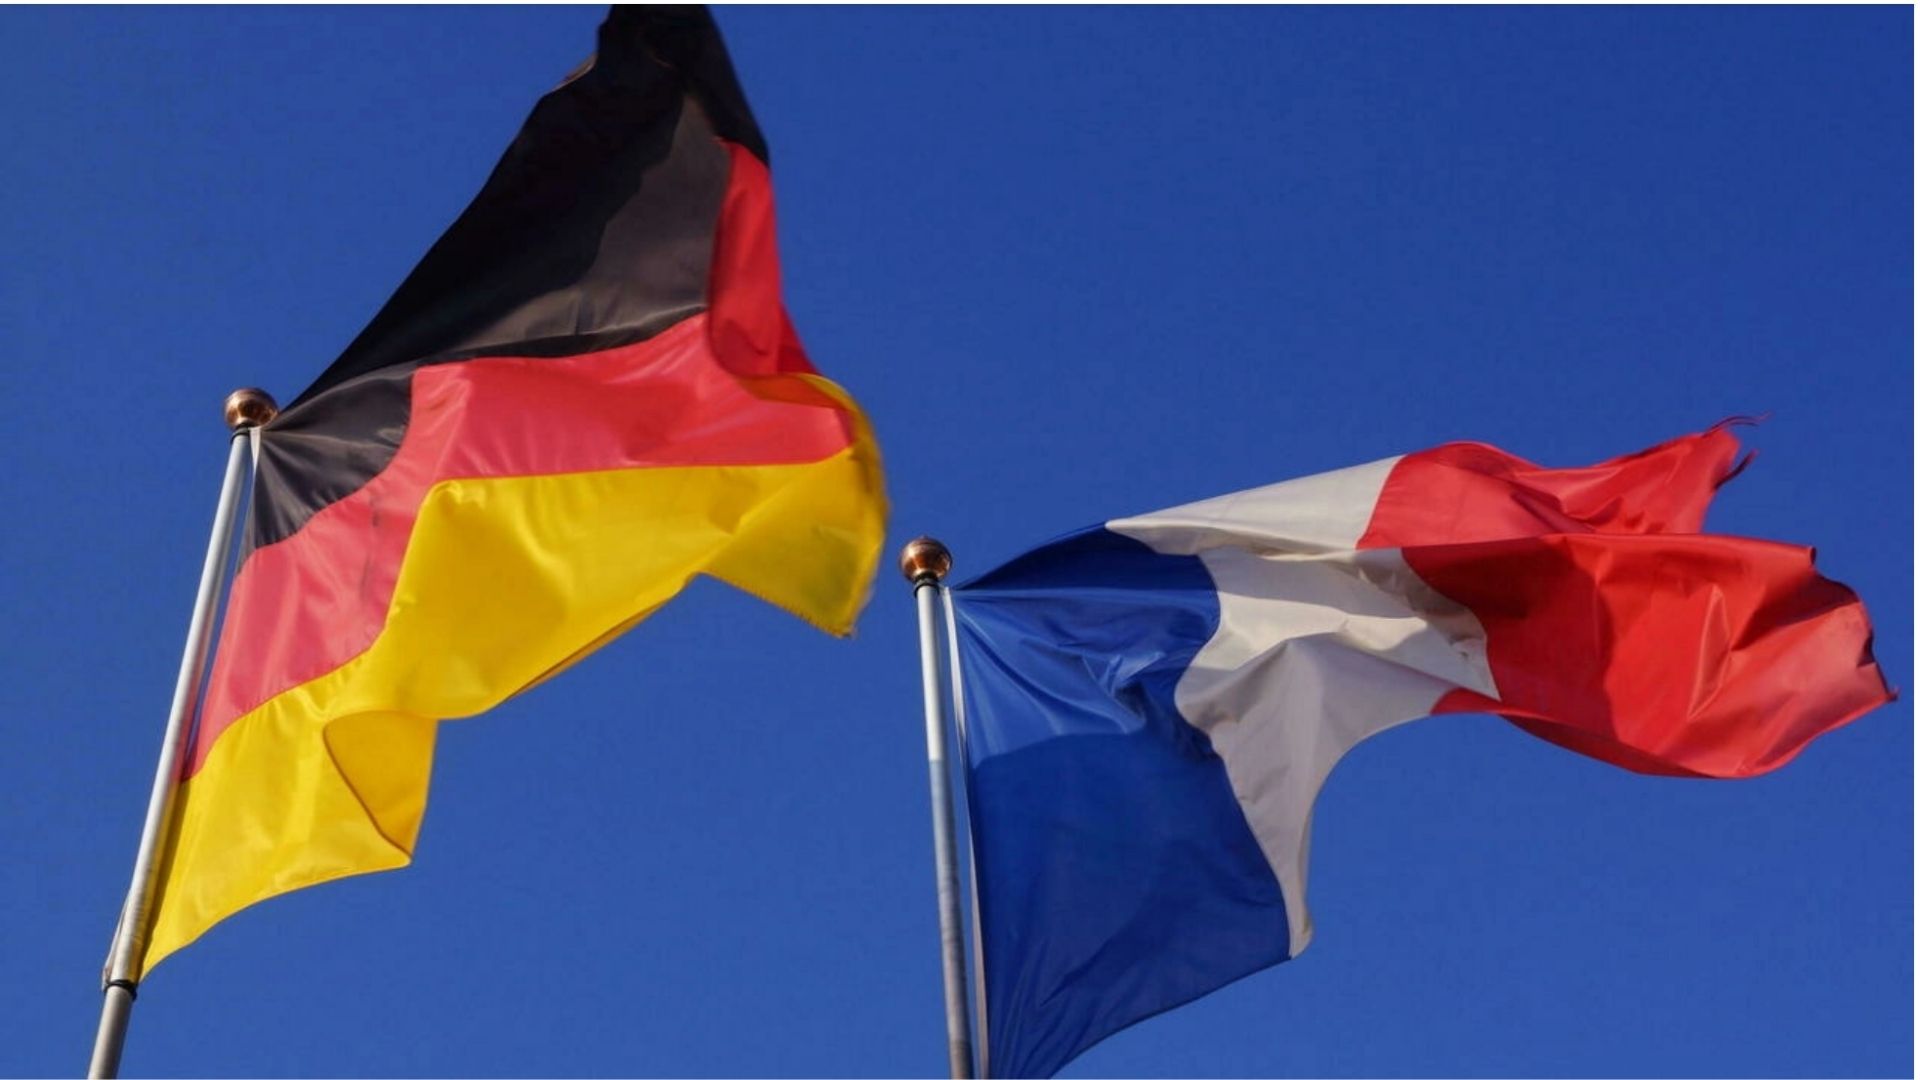 Vivre ailleurs, sur RFI. “Journée franco-allemande et bilan du Fonds citoyen“